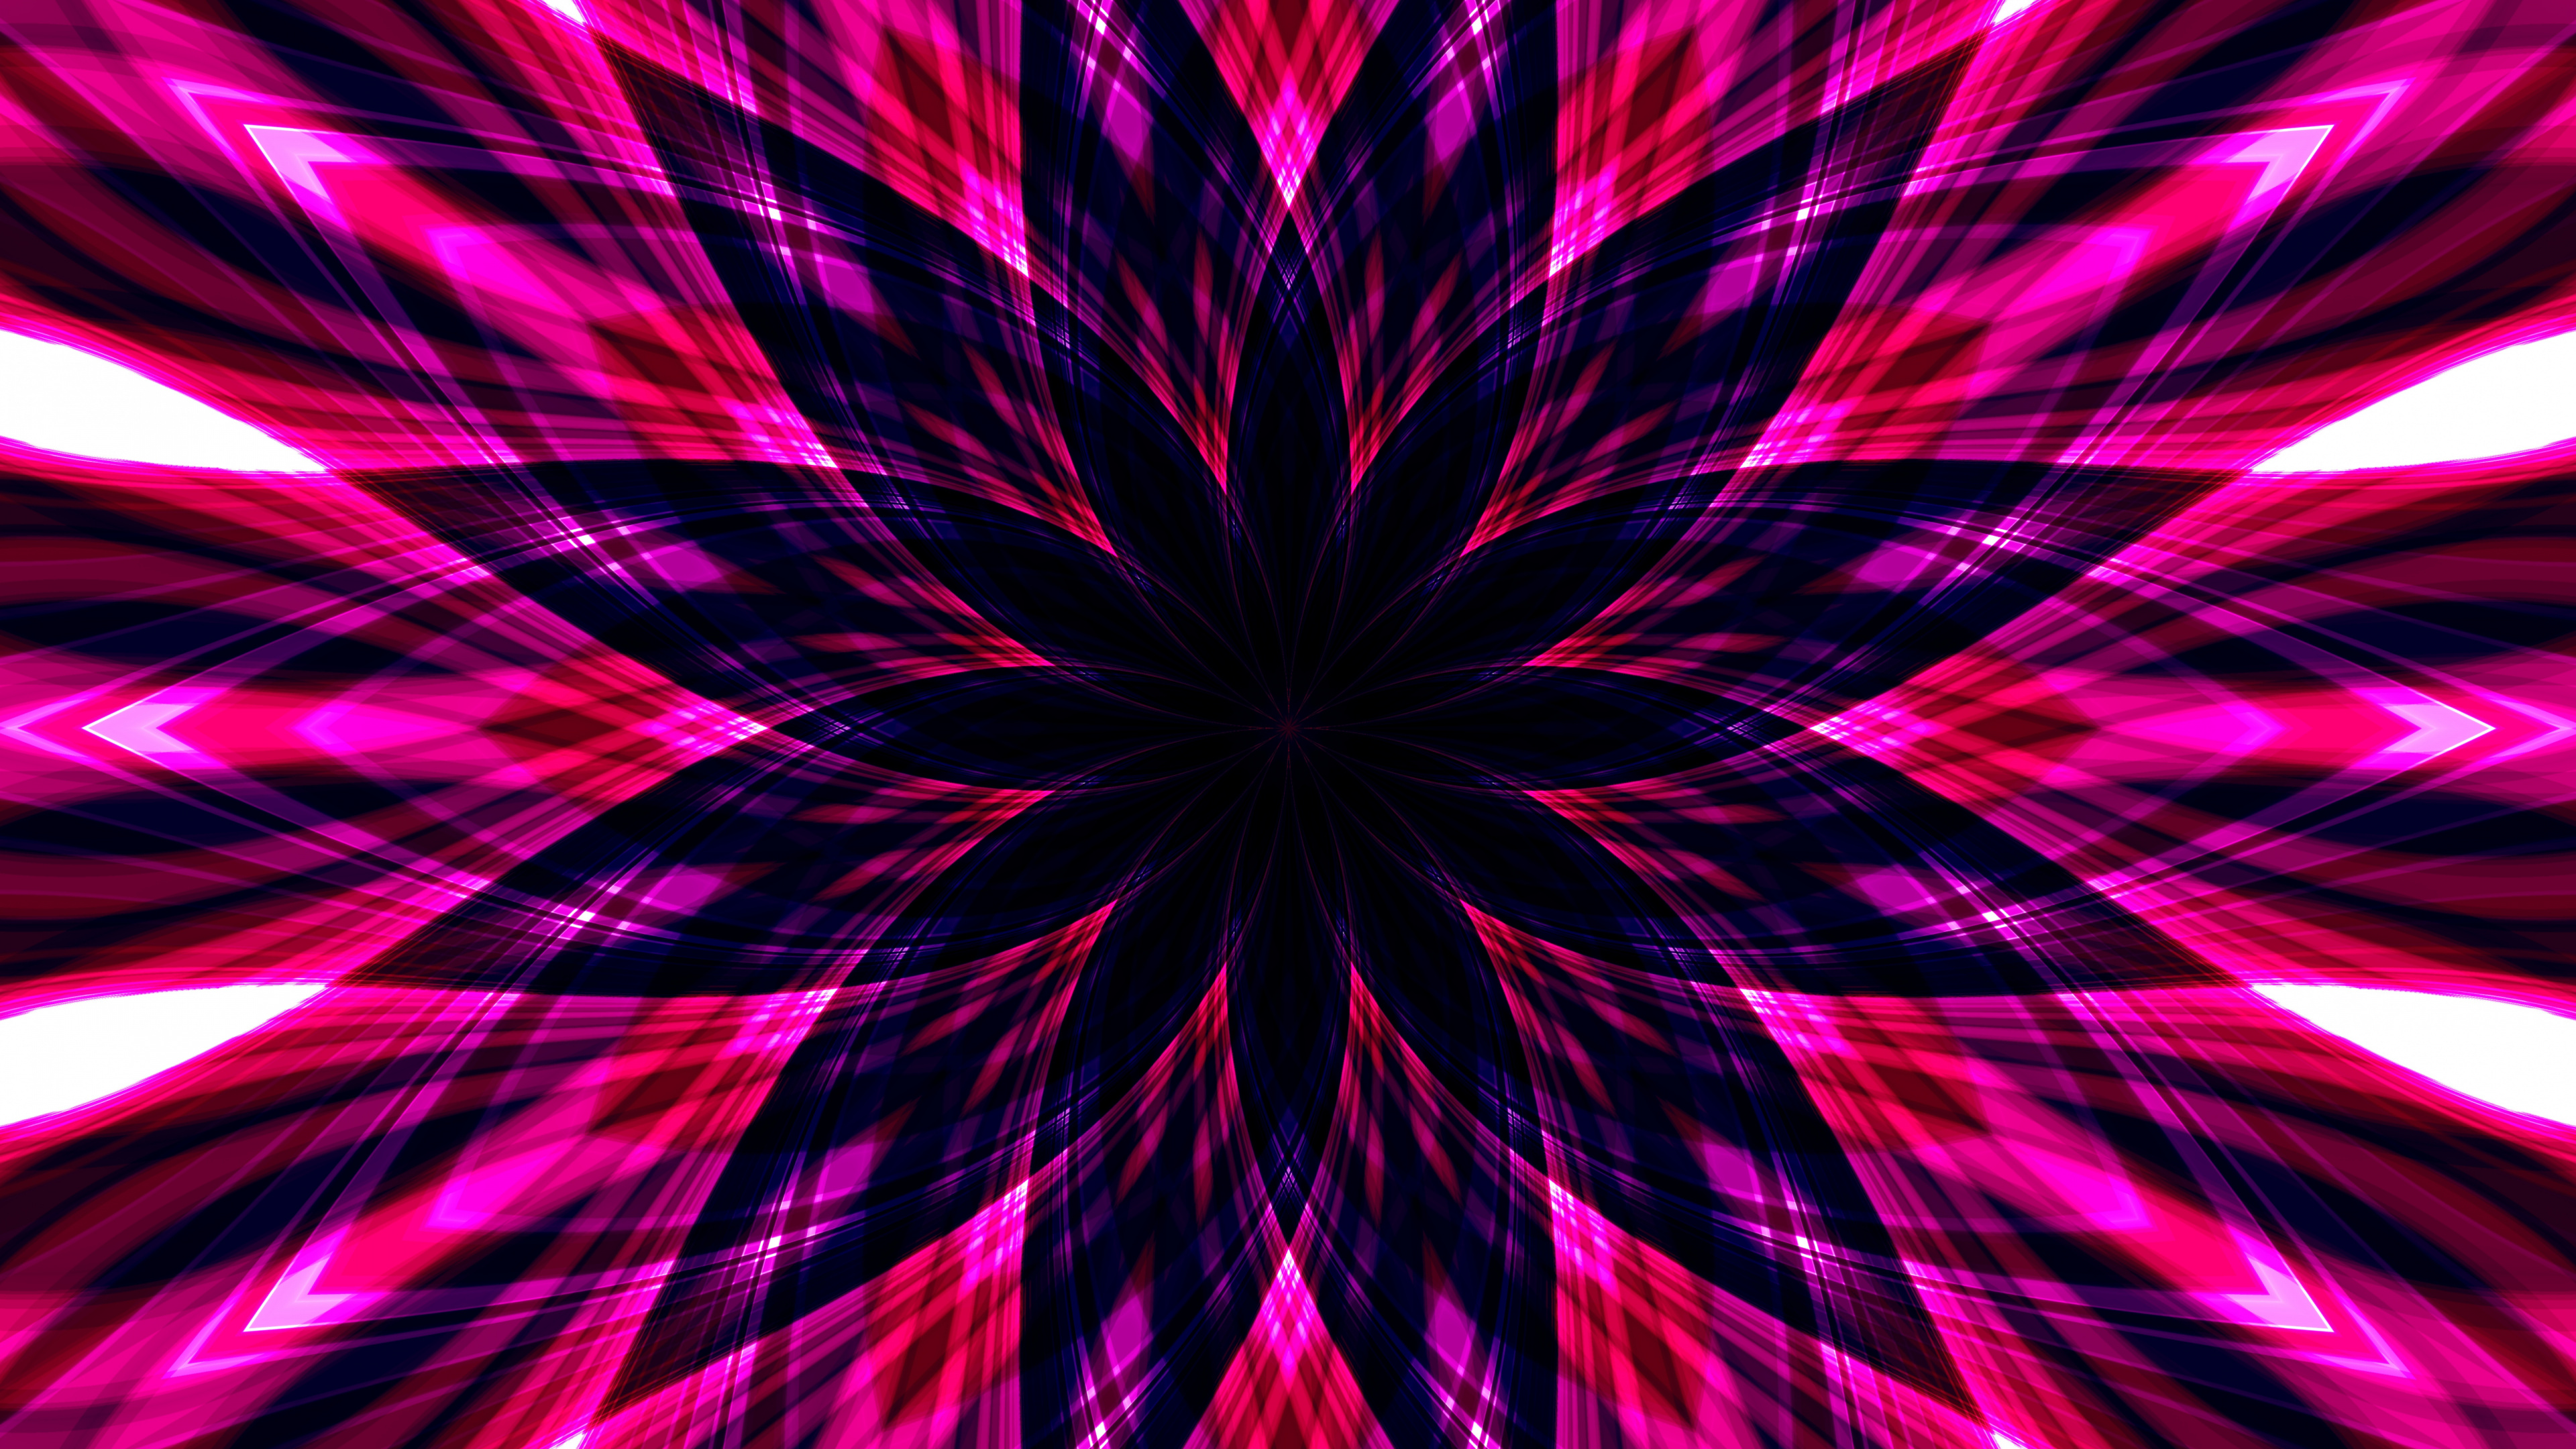 абстракция, розовый, яркий, цветок, 3840x2160, 4к обои